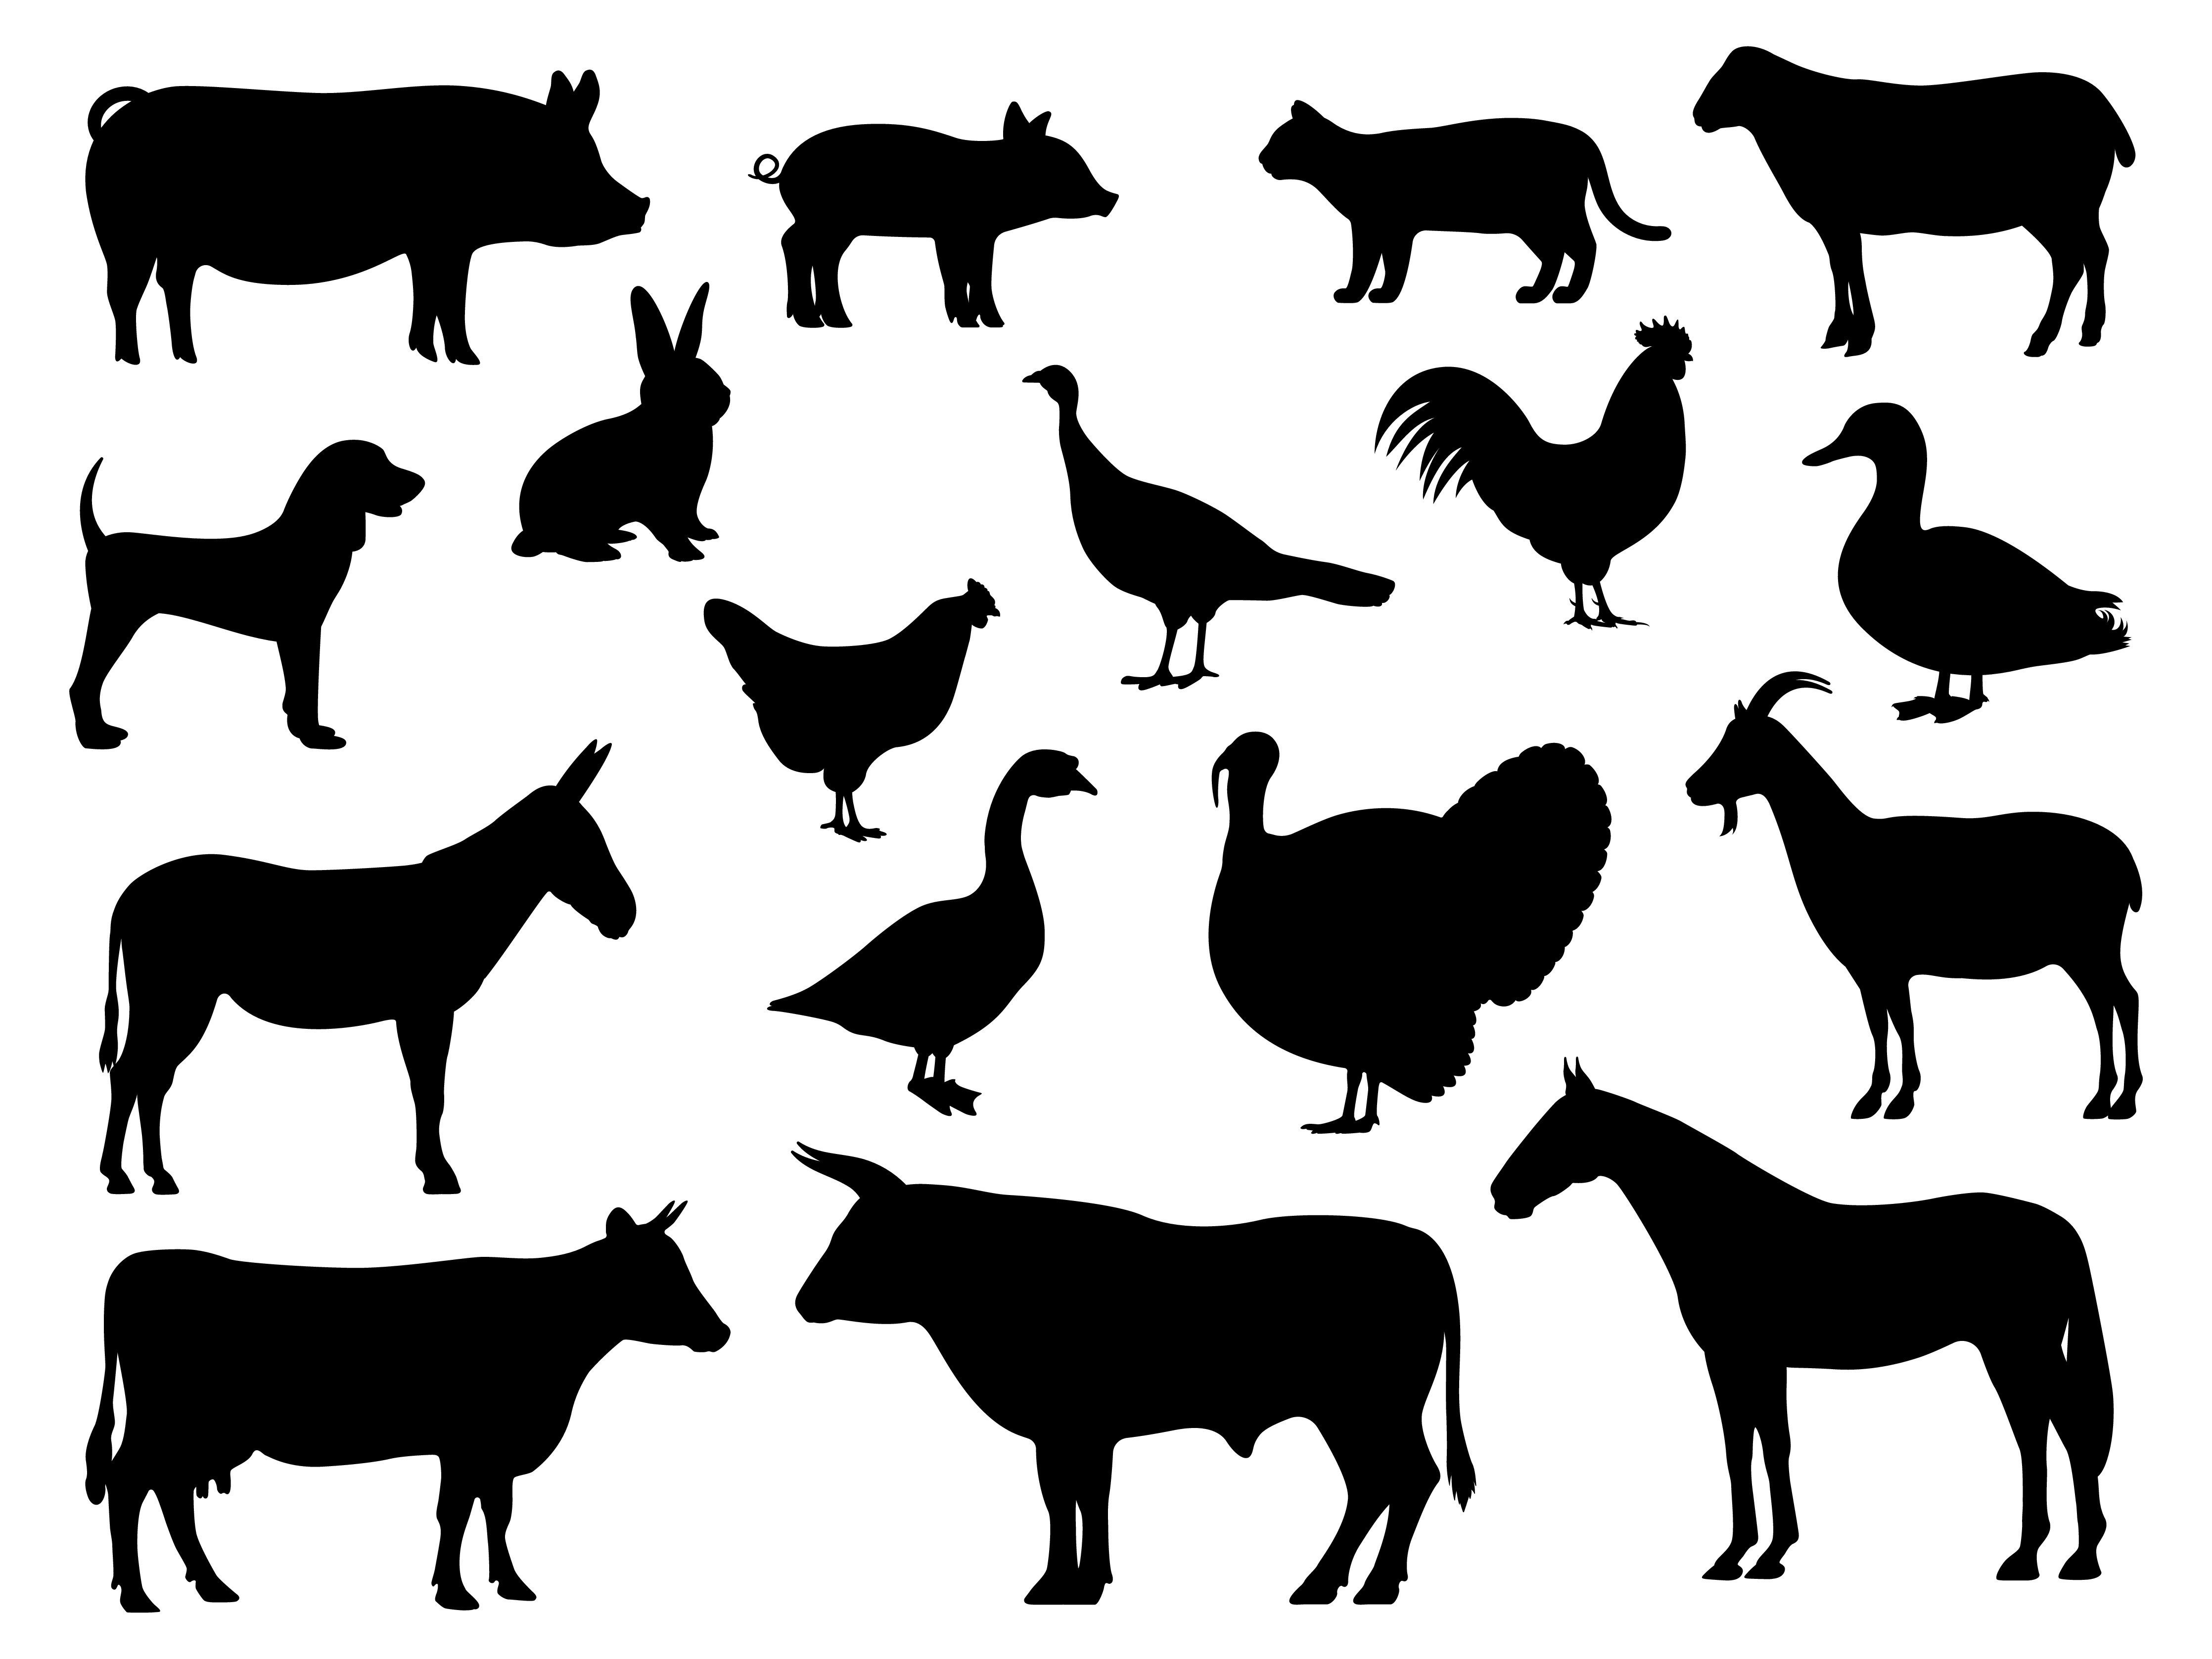 Silhouetten in schwarz von Schwein, Katze, Hund, Schaf, Hase, Esel, Pferd, Rind, Ziege, Geflügel